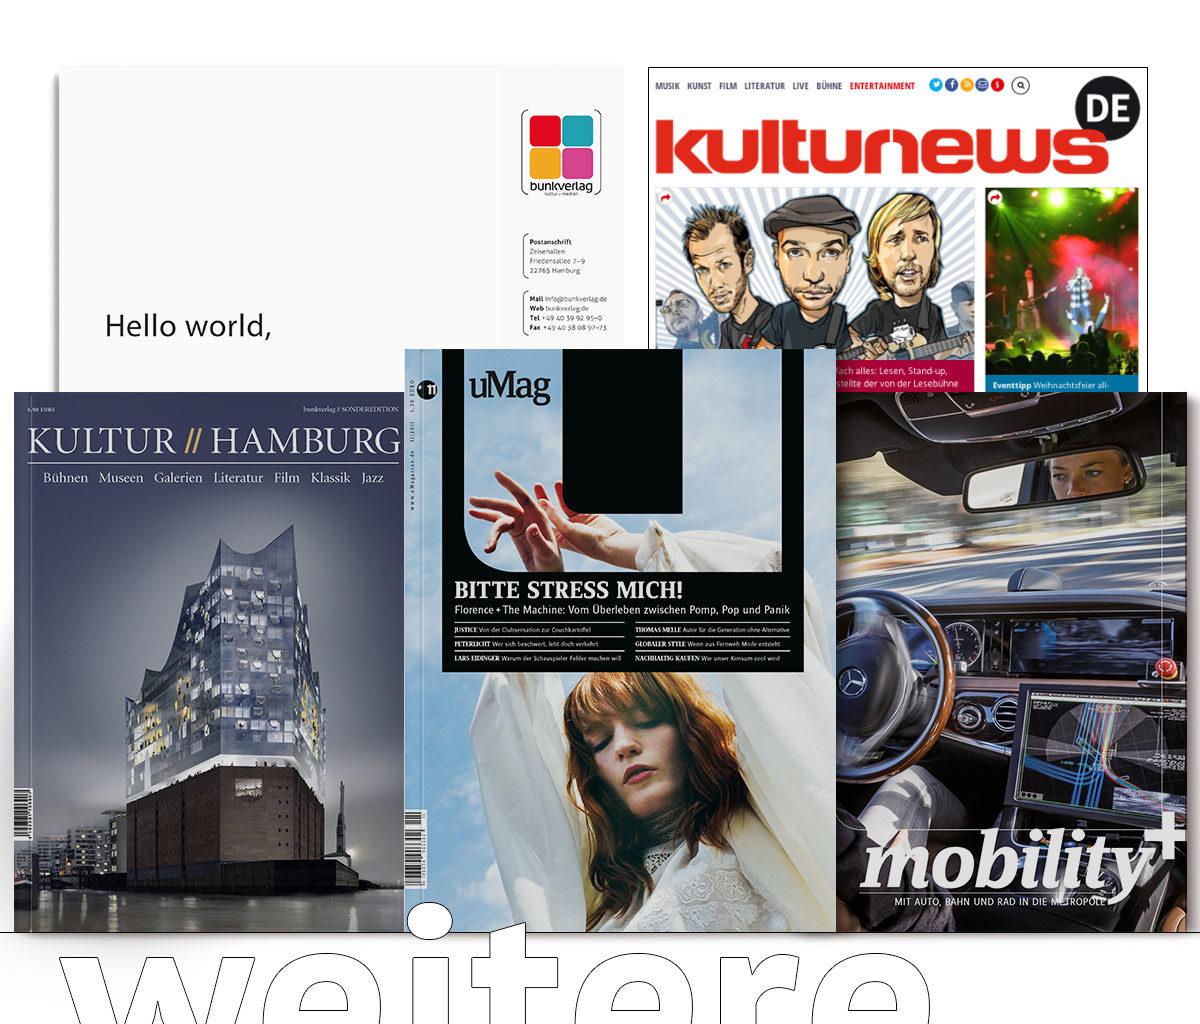 Editorialdesign, Grafikdesign, Webdesign - Bunkverlag